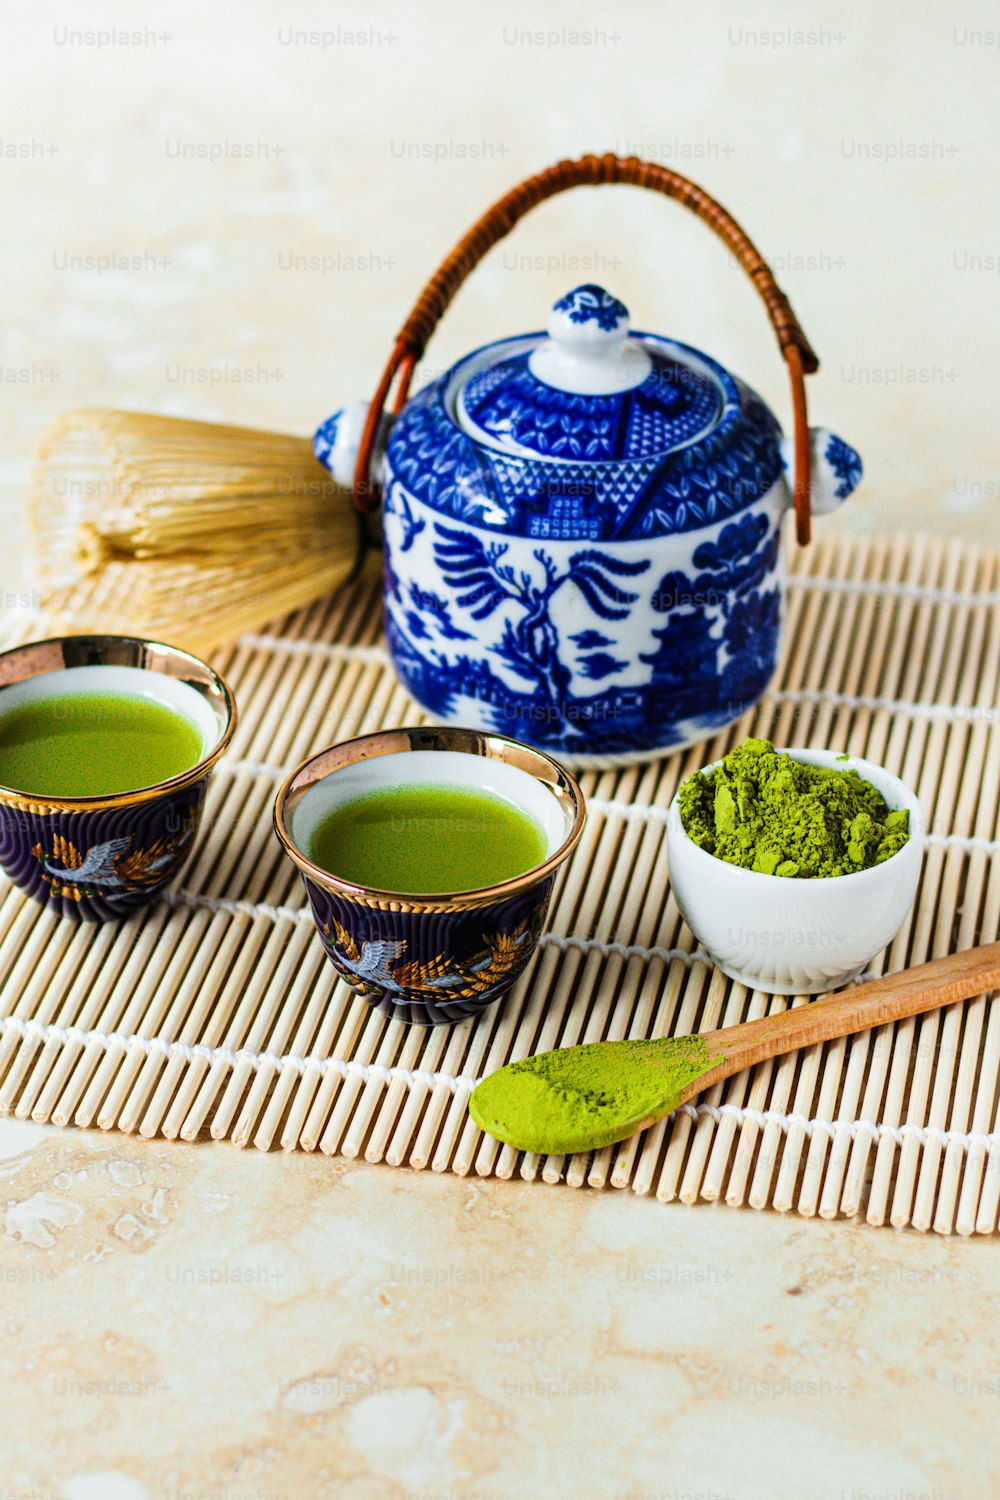 zwei Schüsseln mit grünem Tee neben einer Teekanne